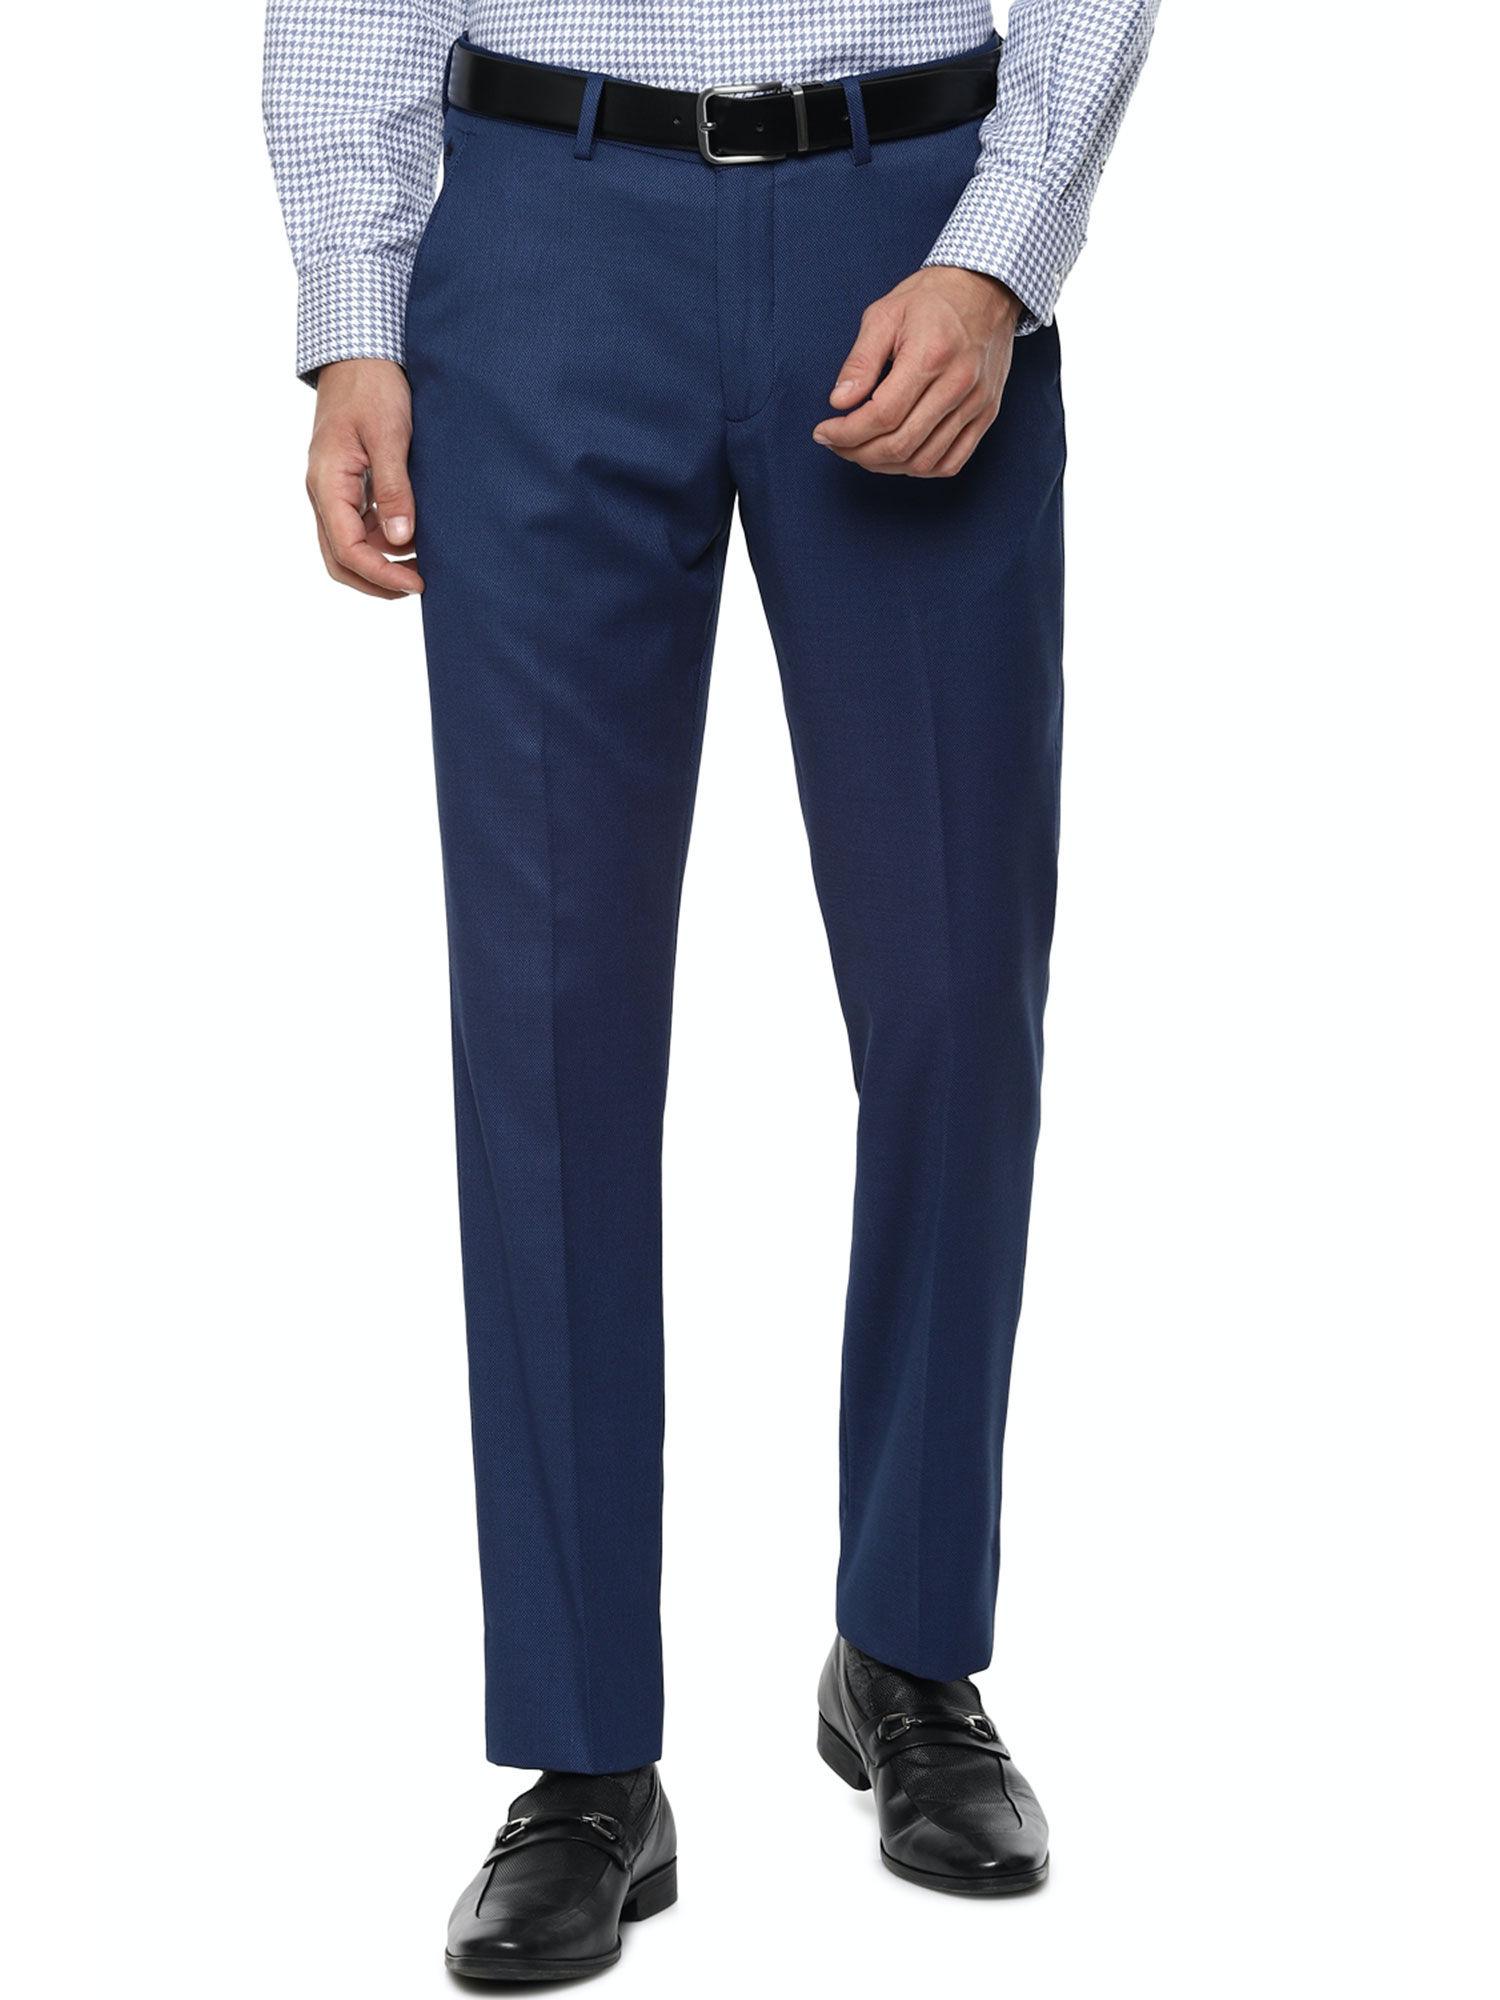 navy blue formal trouser